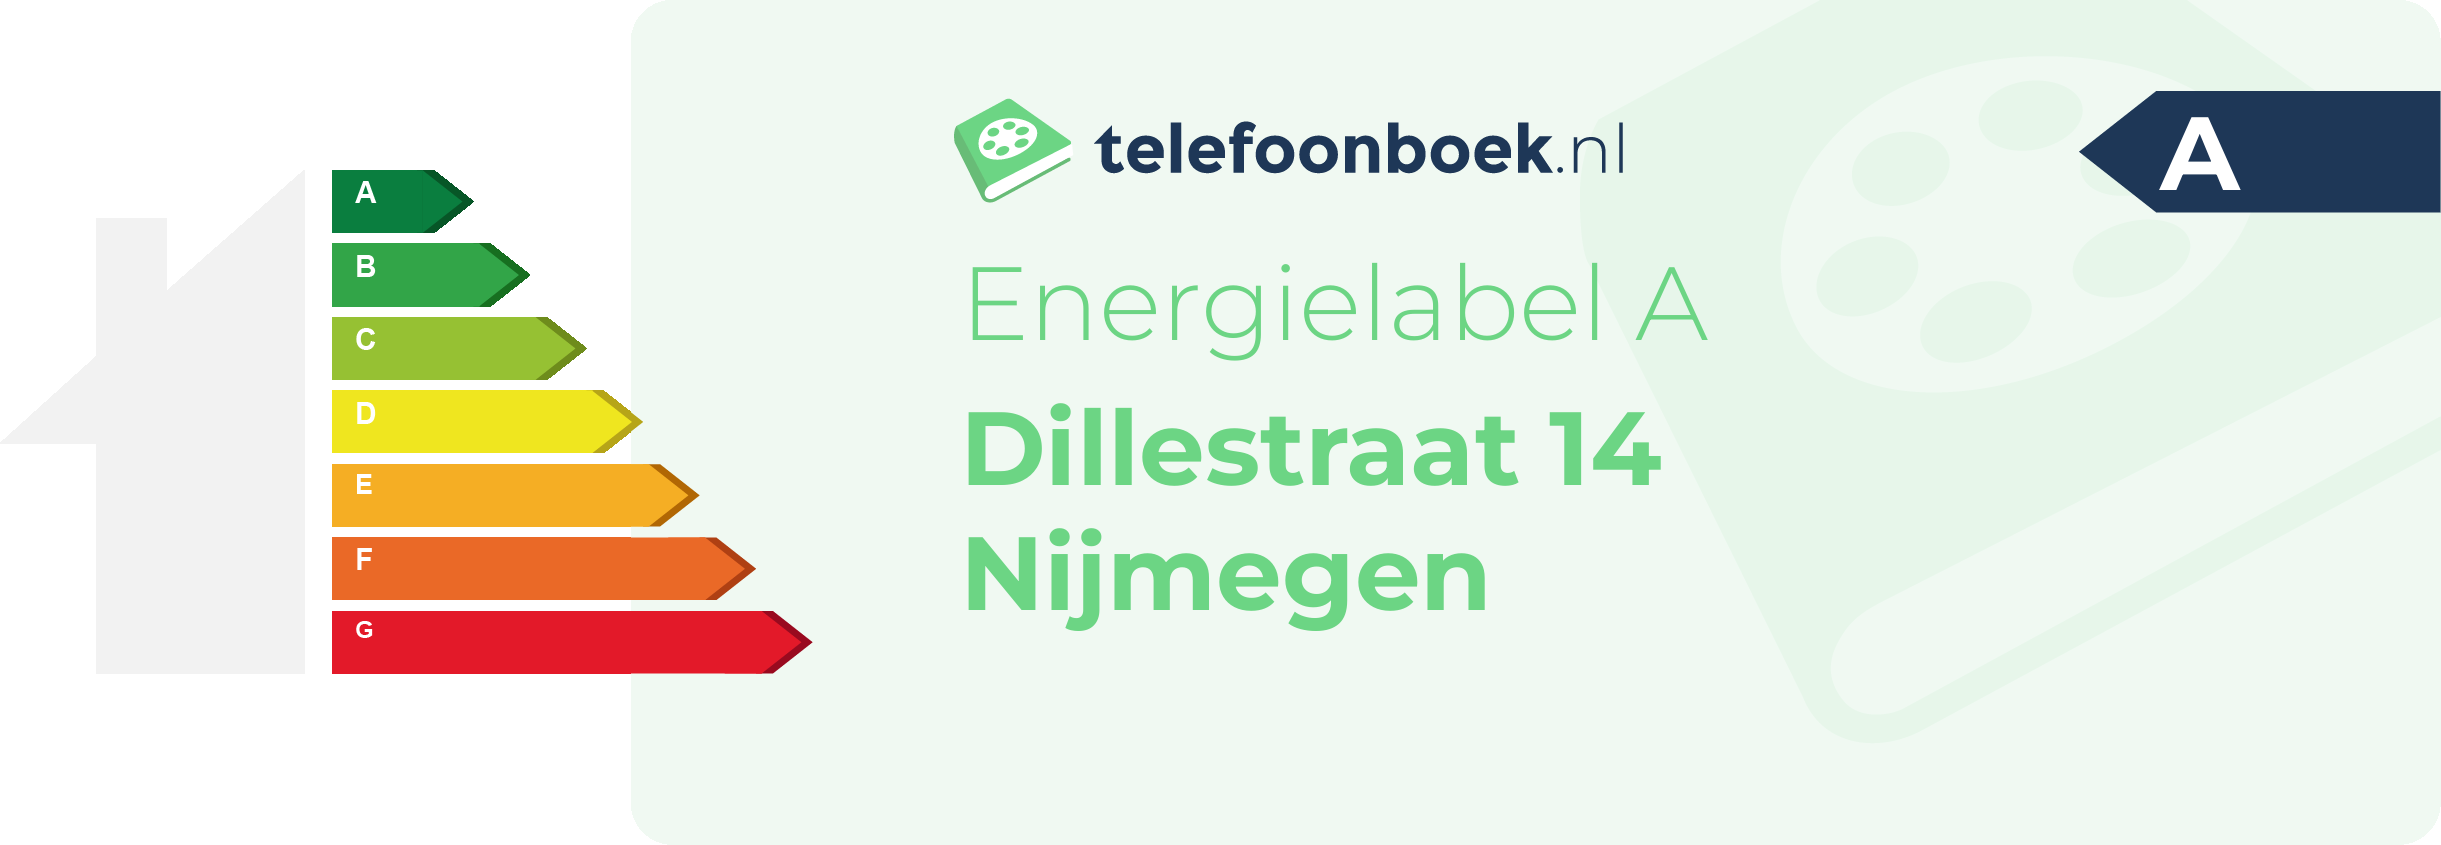 Energielabel Dillestraat 14 Nijmegen